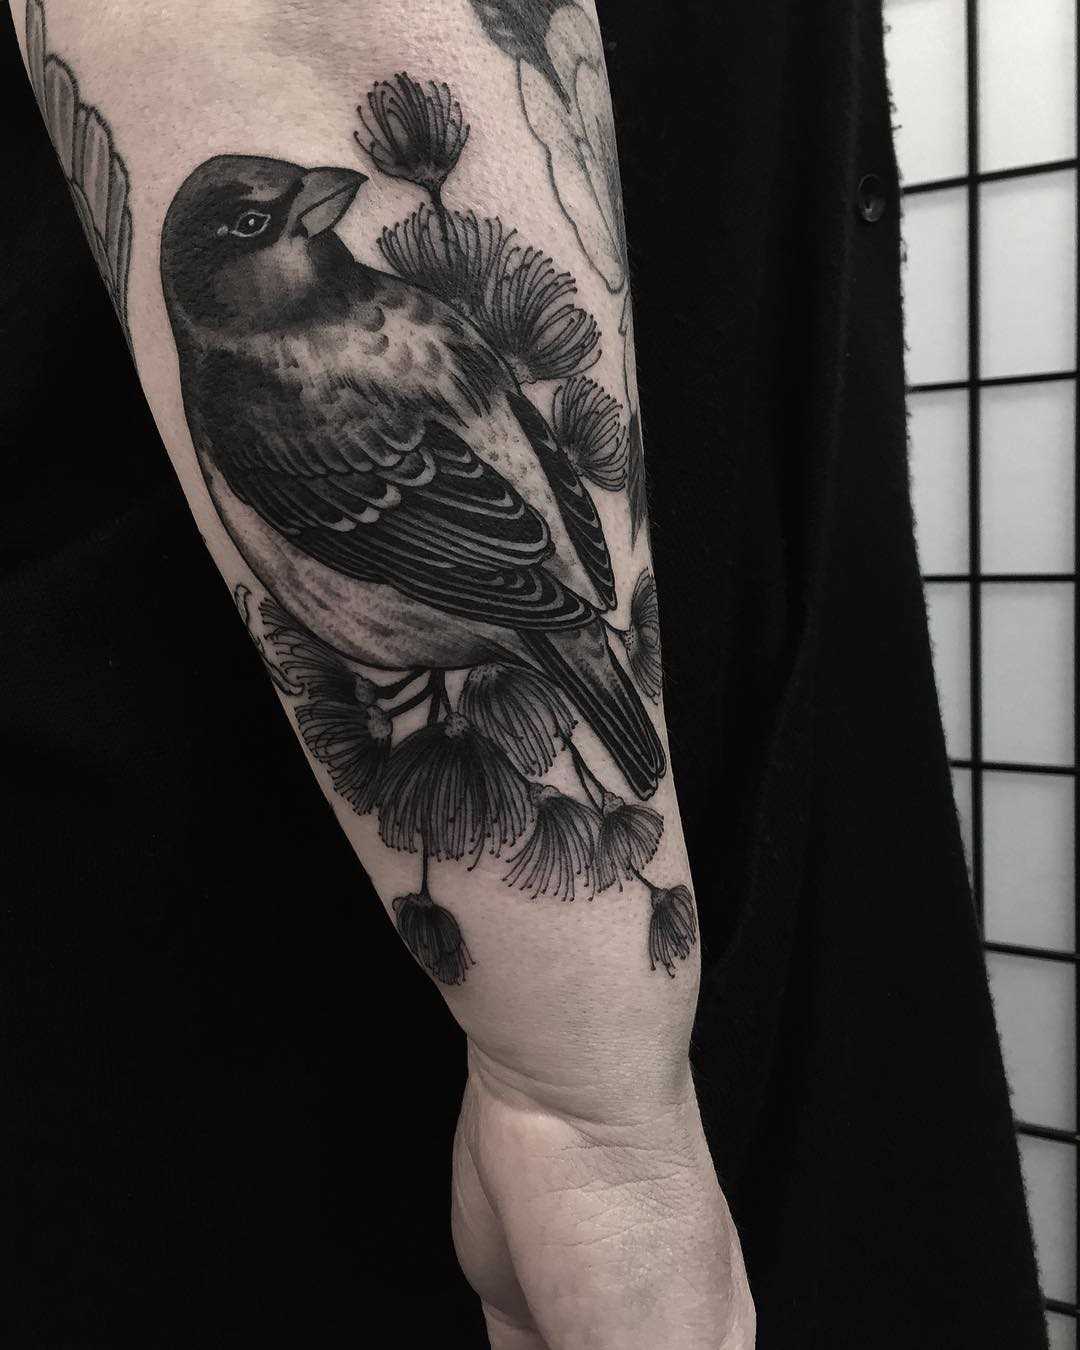 Legal a tatuagem de um pardal no antebraço cara